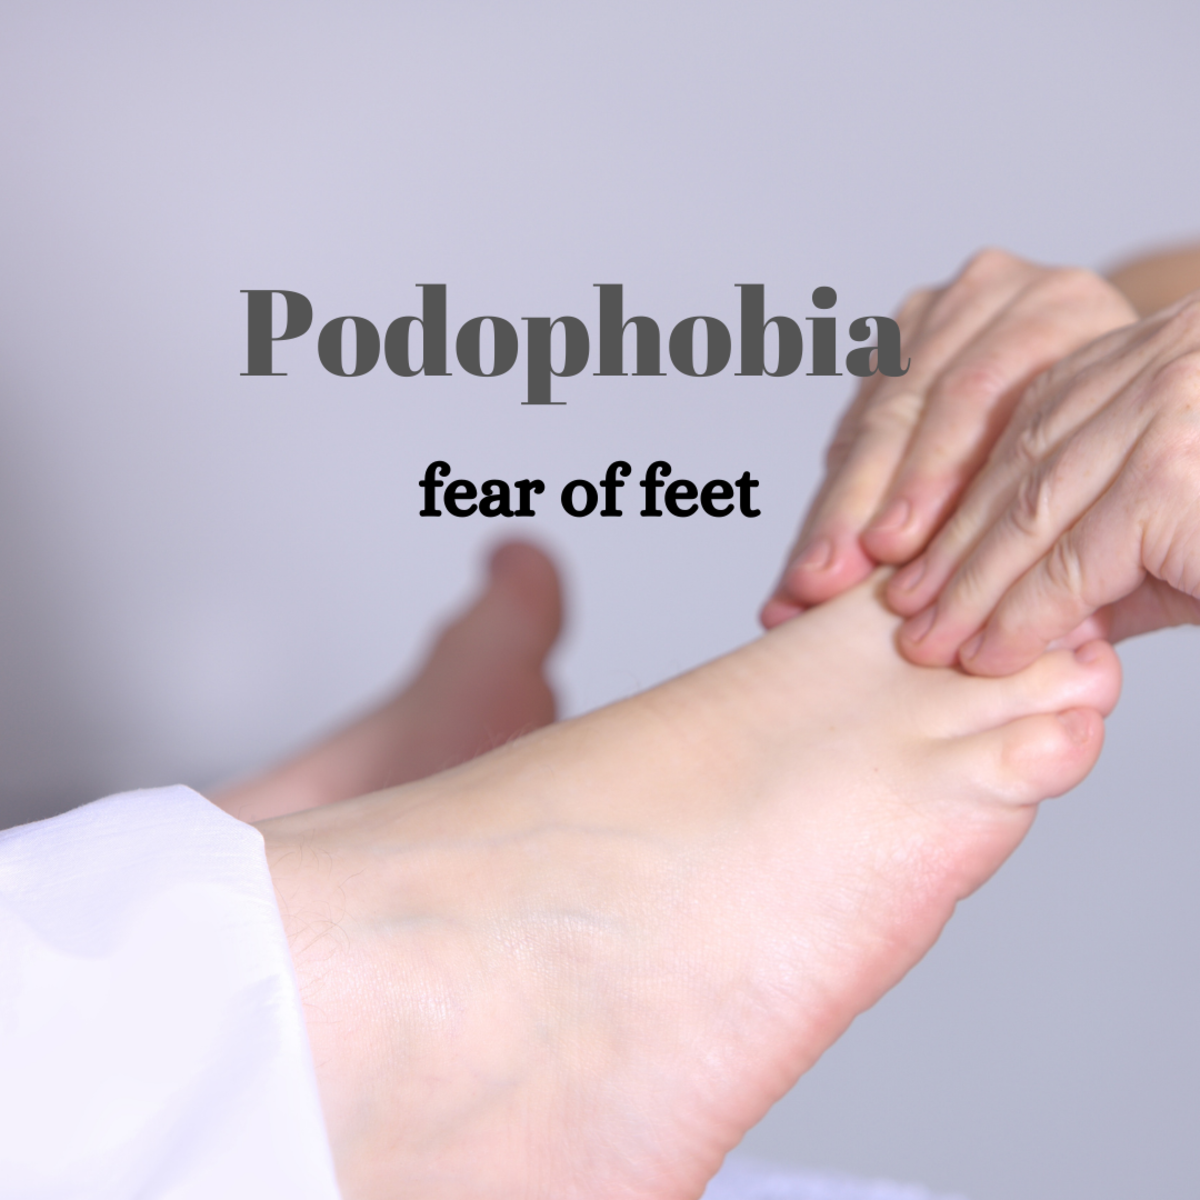 Podophobia, a fear of feet